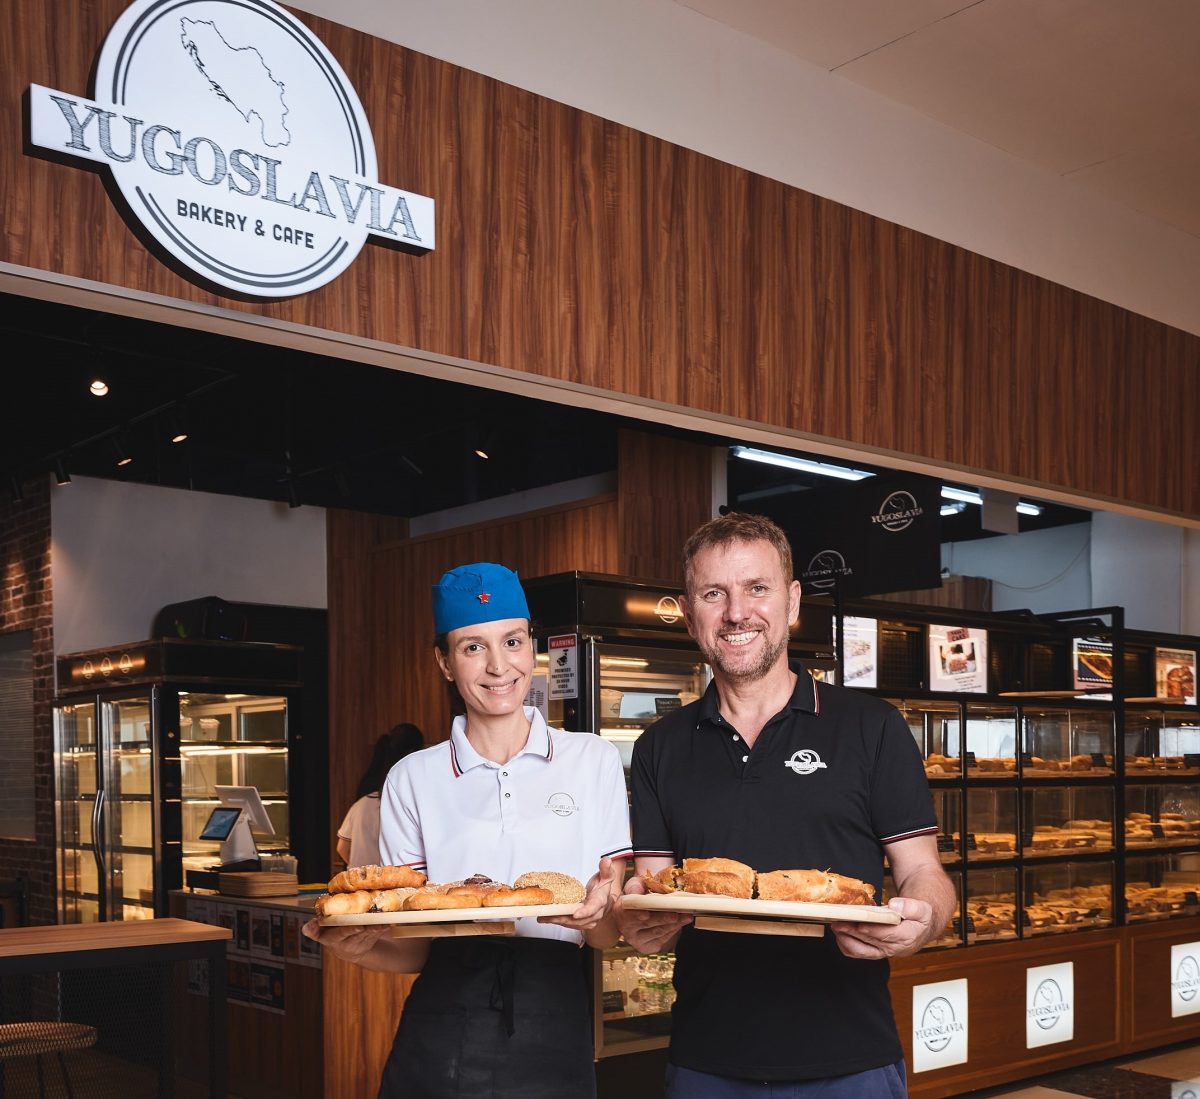 Македонски пилот отвори пекарница „Југославија“ во Сингапур